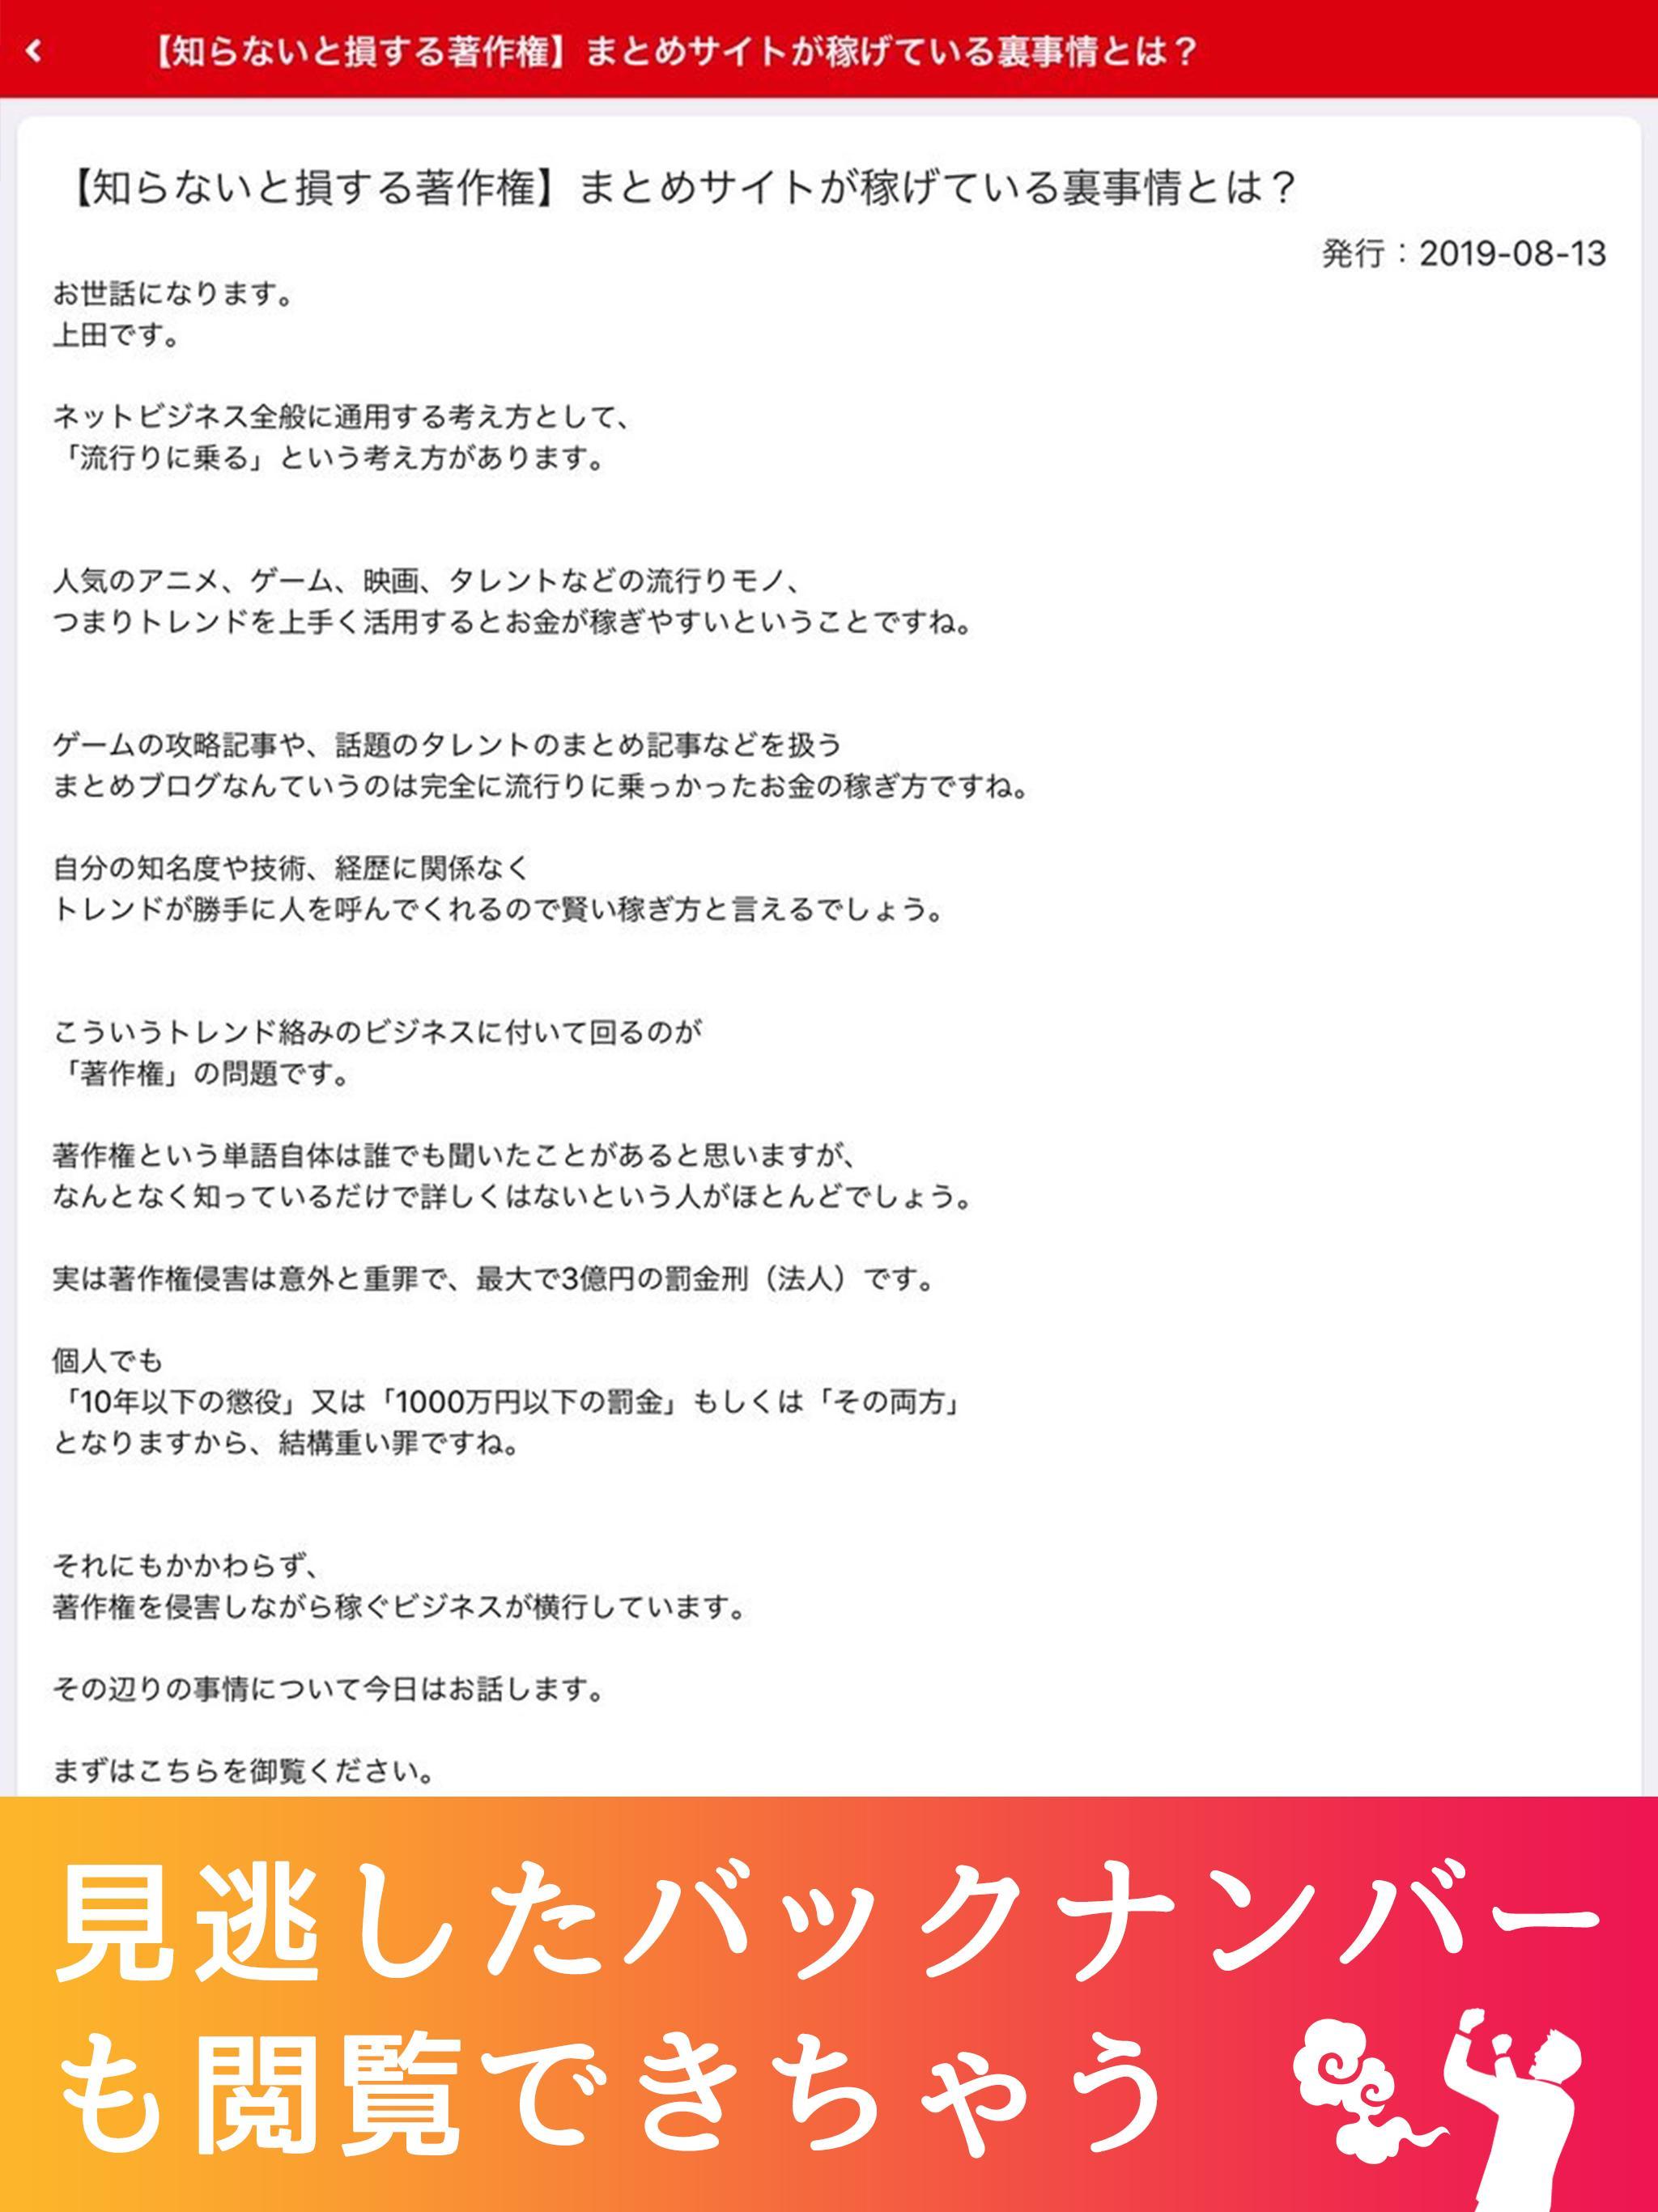 上田幸司公式アプリ 1.4.0 Screenshot 6